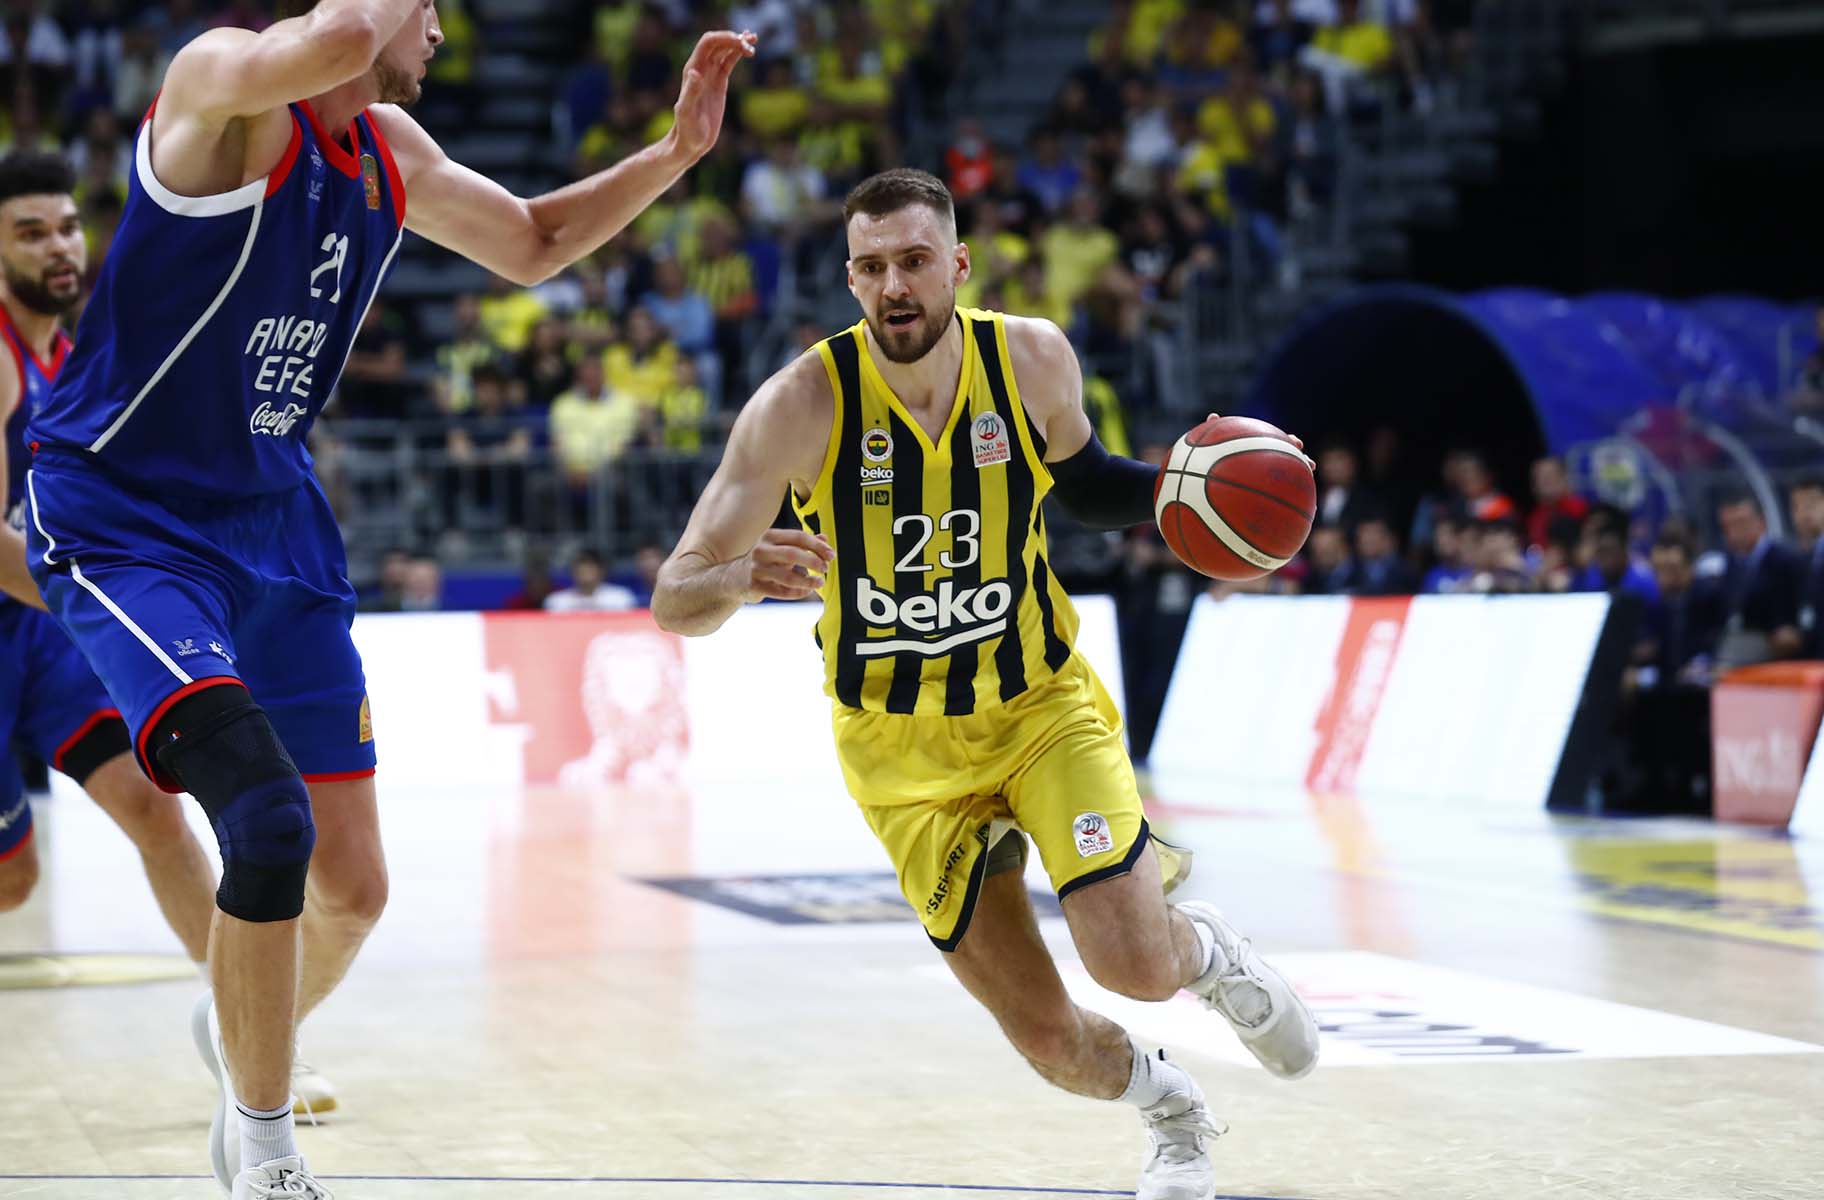 Fenerbahçe Beko - Anadolu Efes ING Basketbol Ligi final serisi ikinci maçı ne zaman, saat kaçta, hangi kanalda? Şifreli mi, şifresiz mi? 